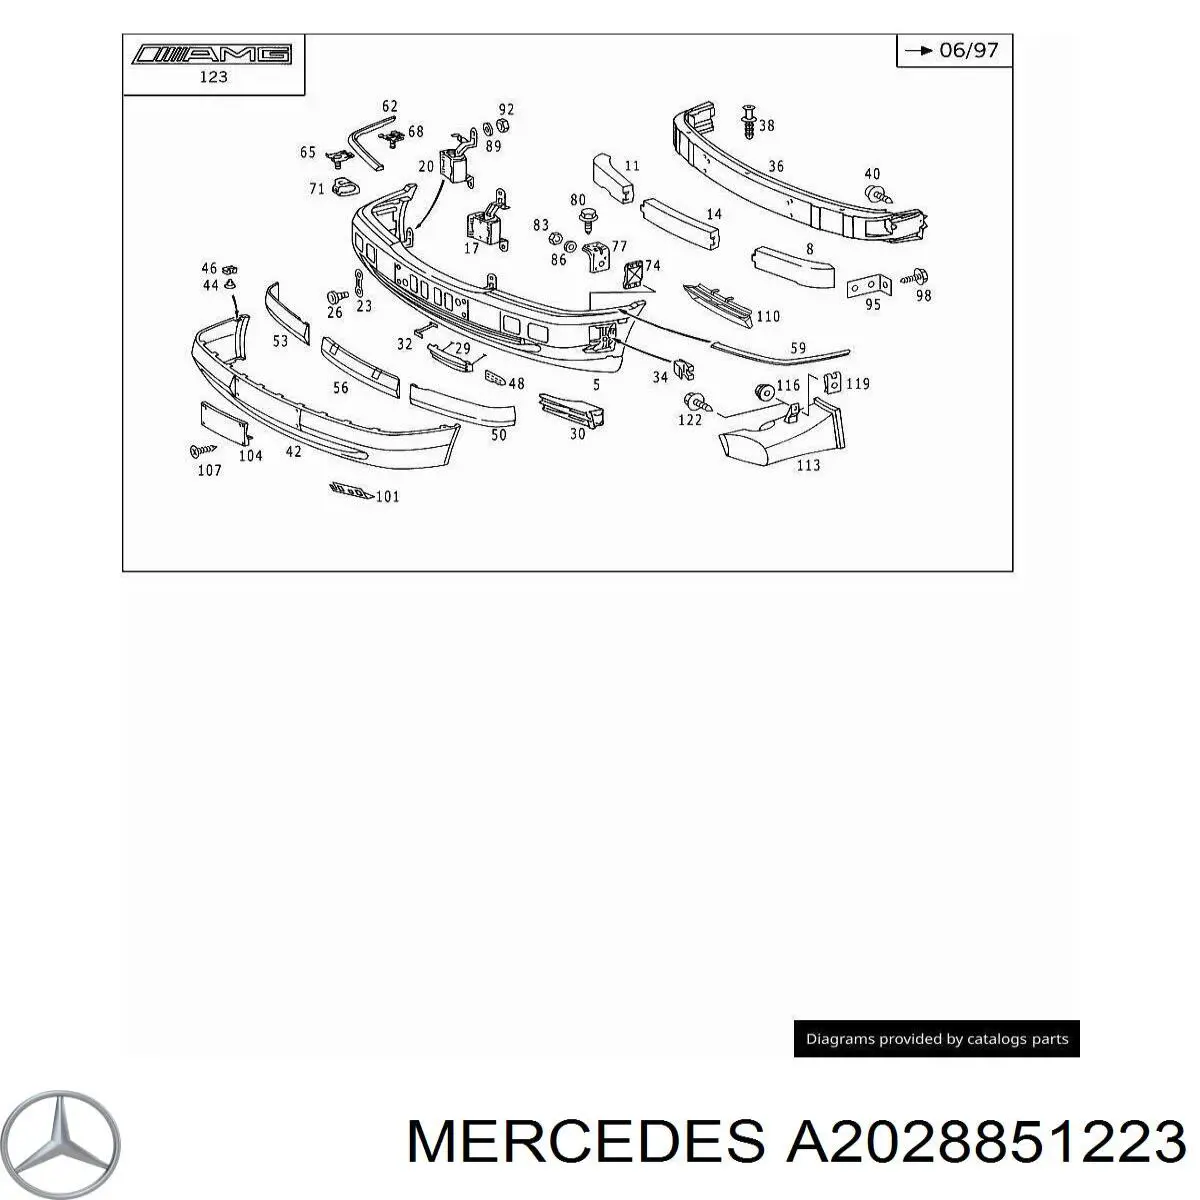 2028851223 Mercedes rejilla de ventilación, parachoques trasero, derecha